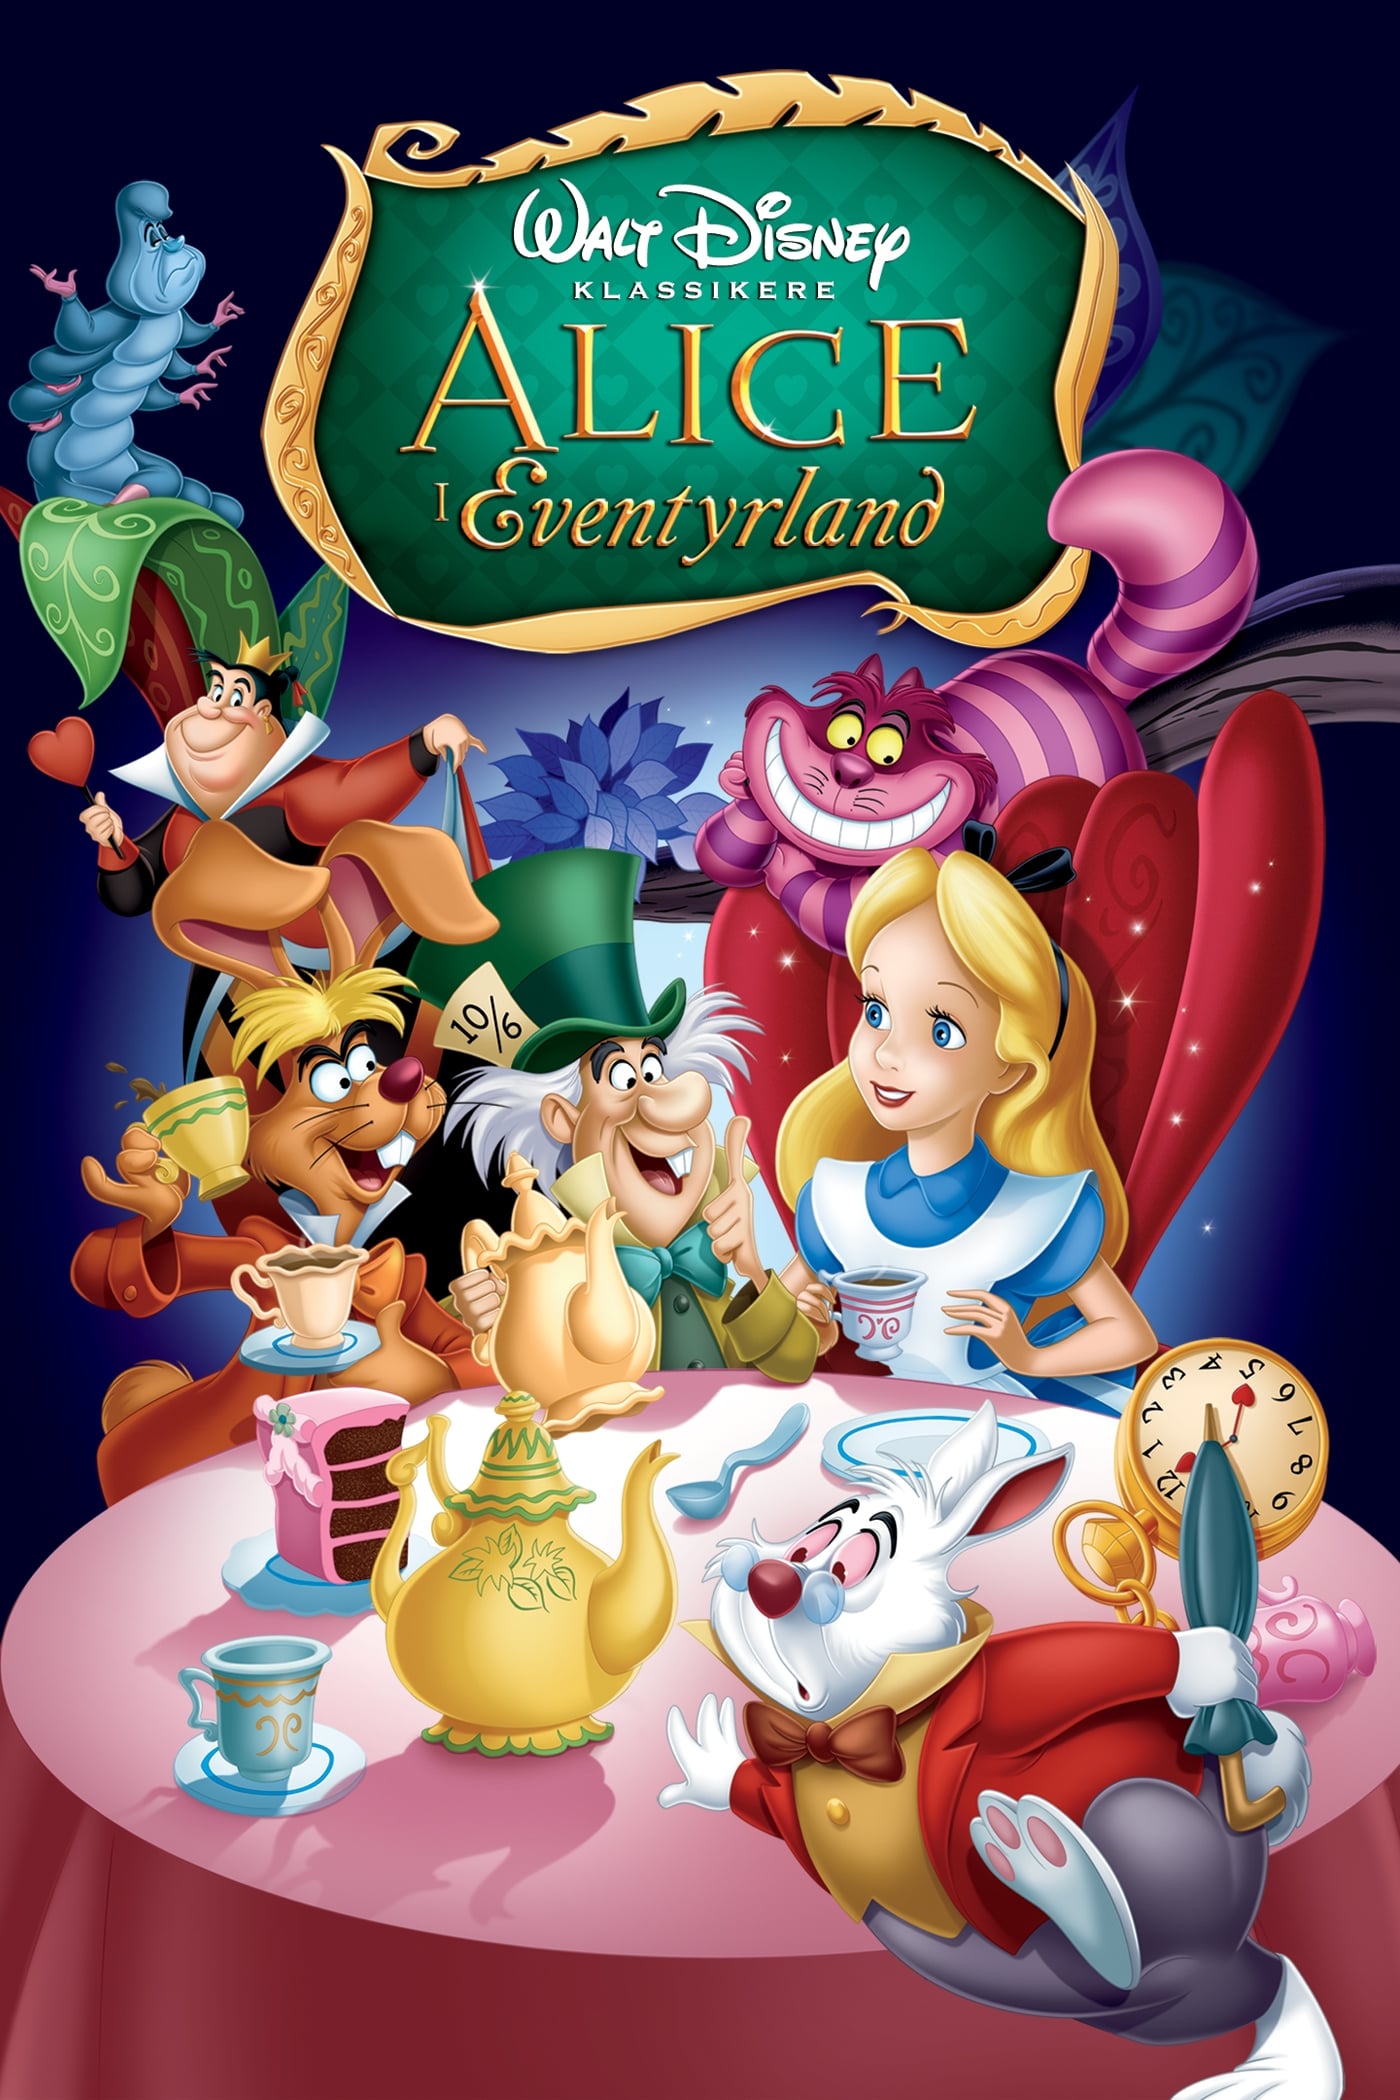 NO Alice In Wonderland